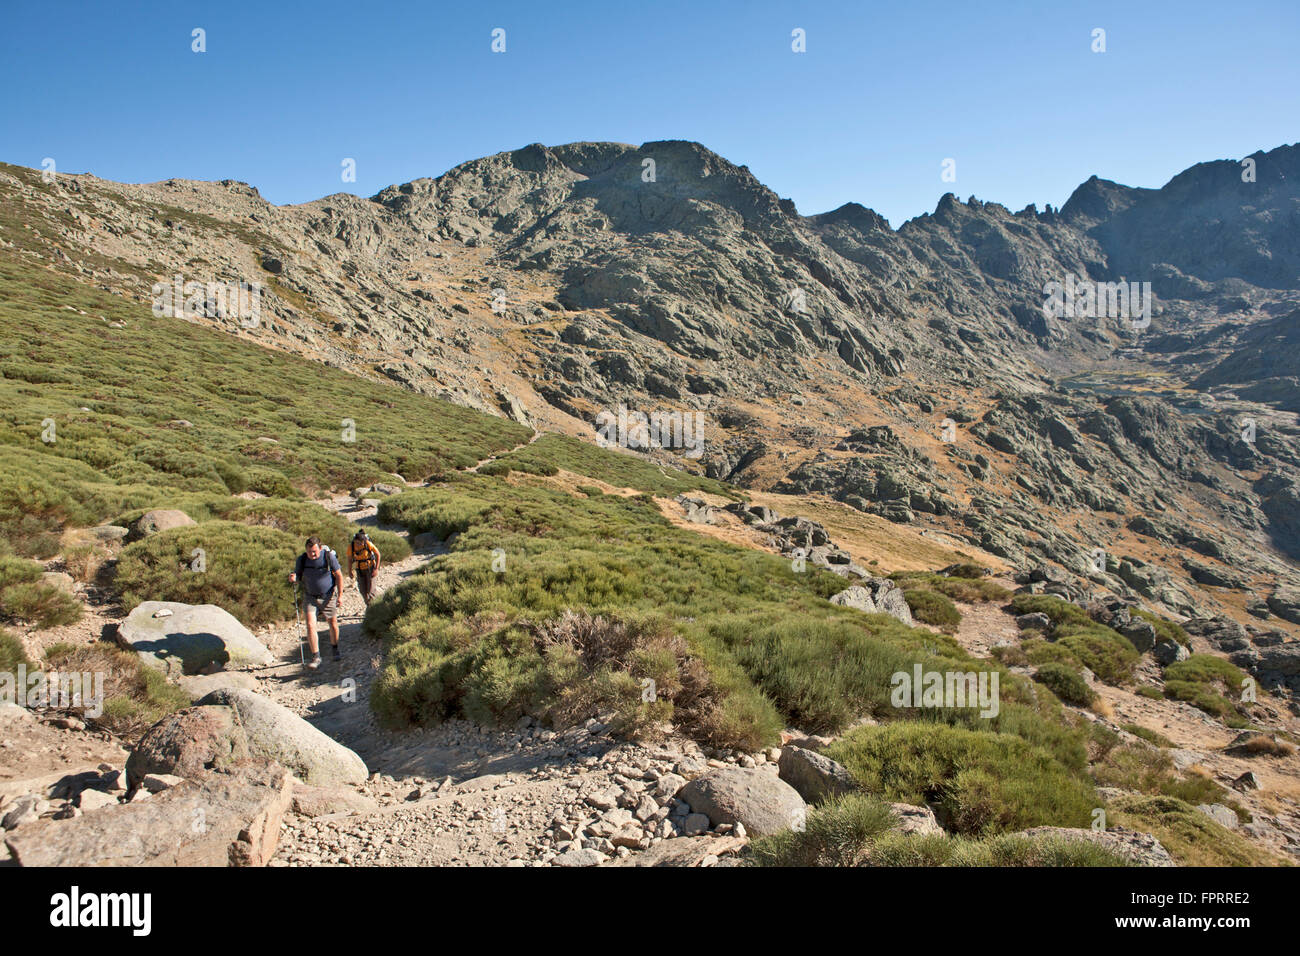 L'Europe, Espagne, Castille-Leon, Sierra de Gredos, parc national, les randonneurs sur un sentier accidenté, vue sur la montagne Banque D'Images